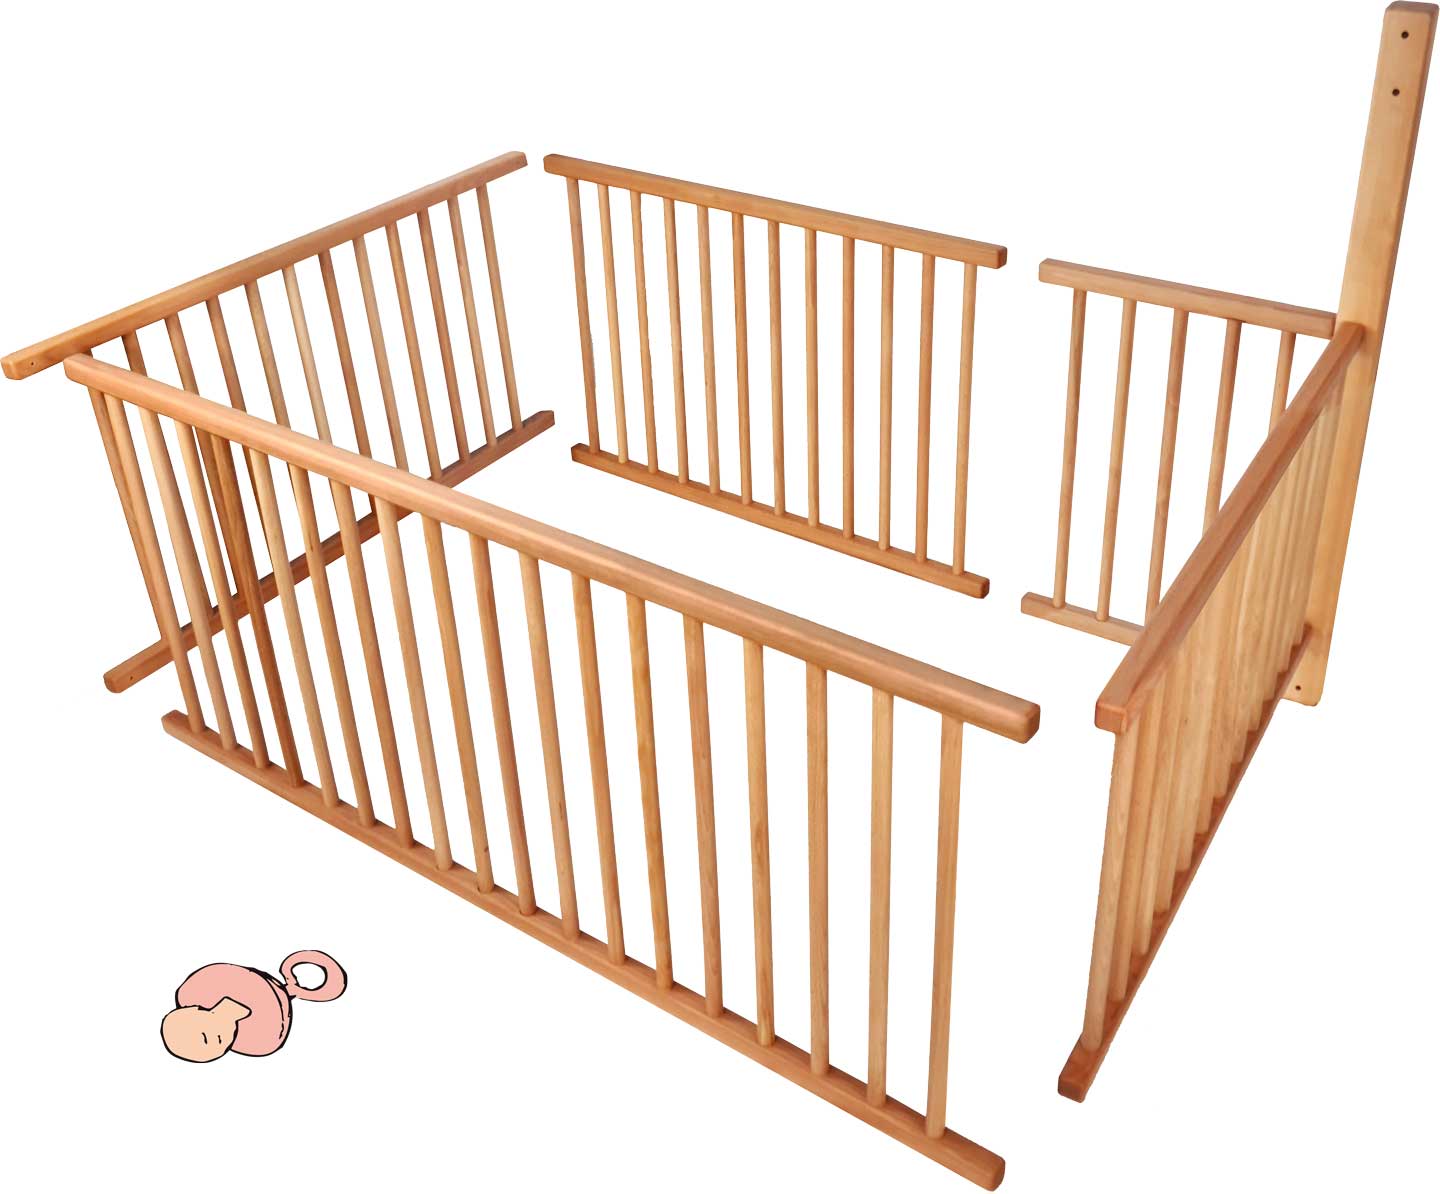 Комплект детской решетки для двухъярусной кровати со стандартными ножками (196 см) и положением лестницы A на 3/4 лежачей поверхности, включая дополнительно необходимую балку**